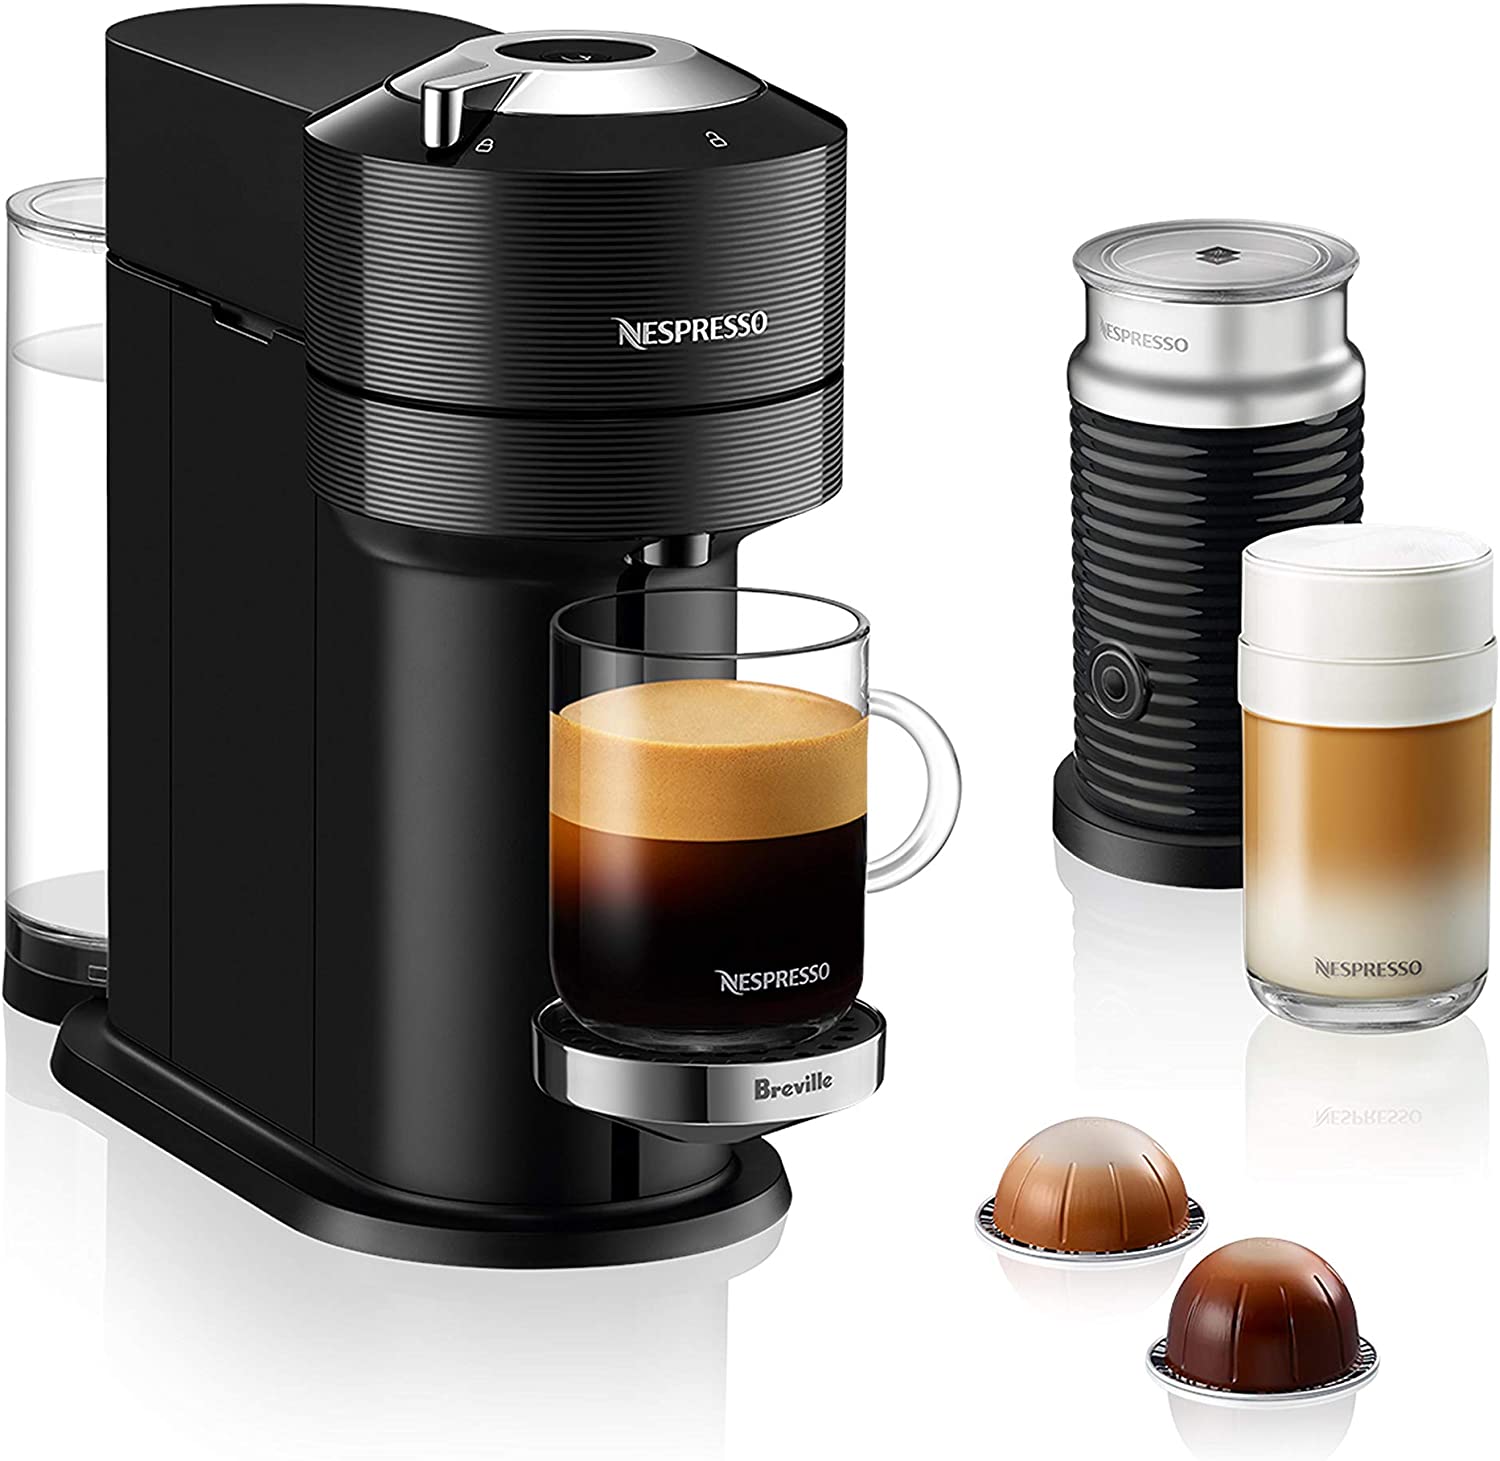 Nespresso Vertuo Next Premium Coffee and Espresso Machine by Breville ...